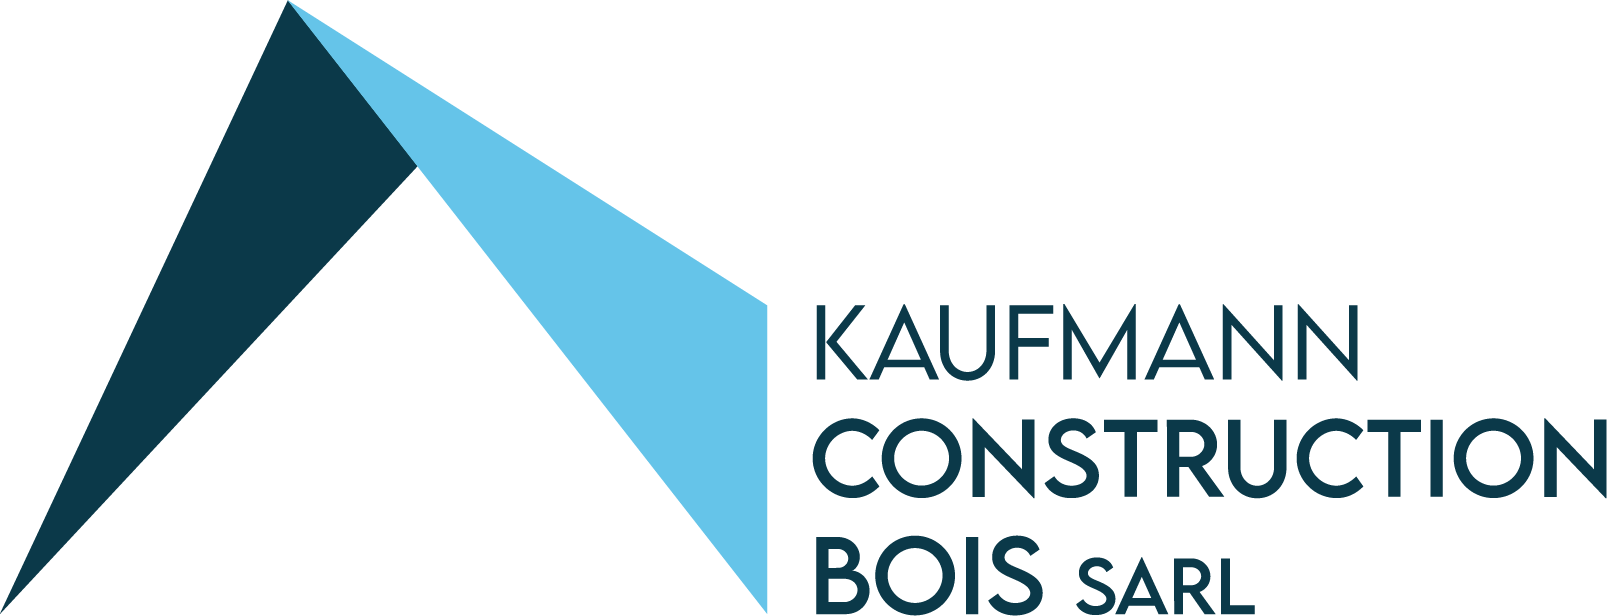 Kaufmann Construction Bois